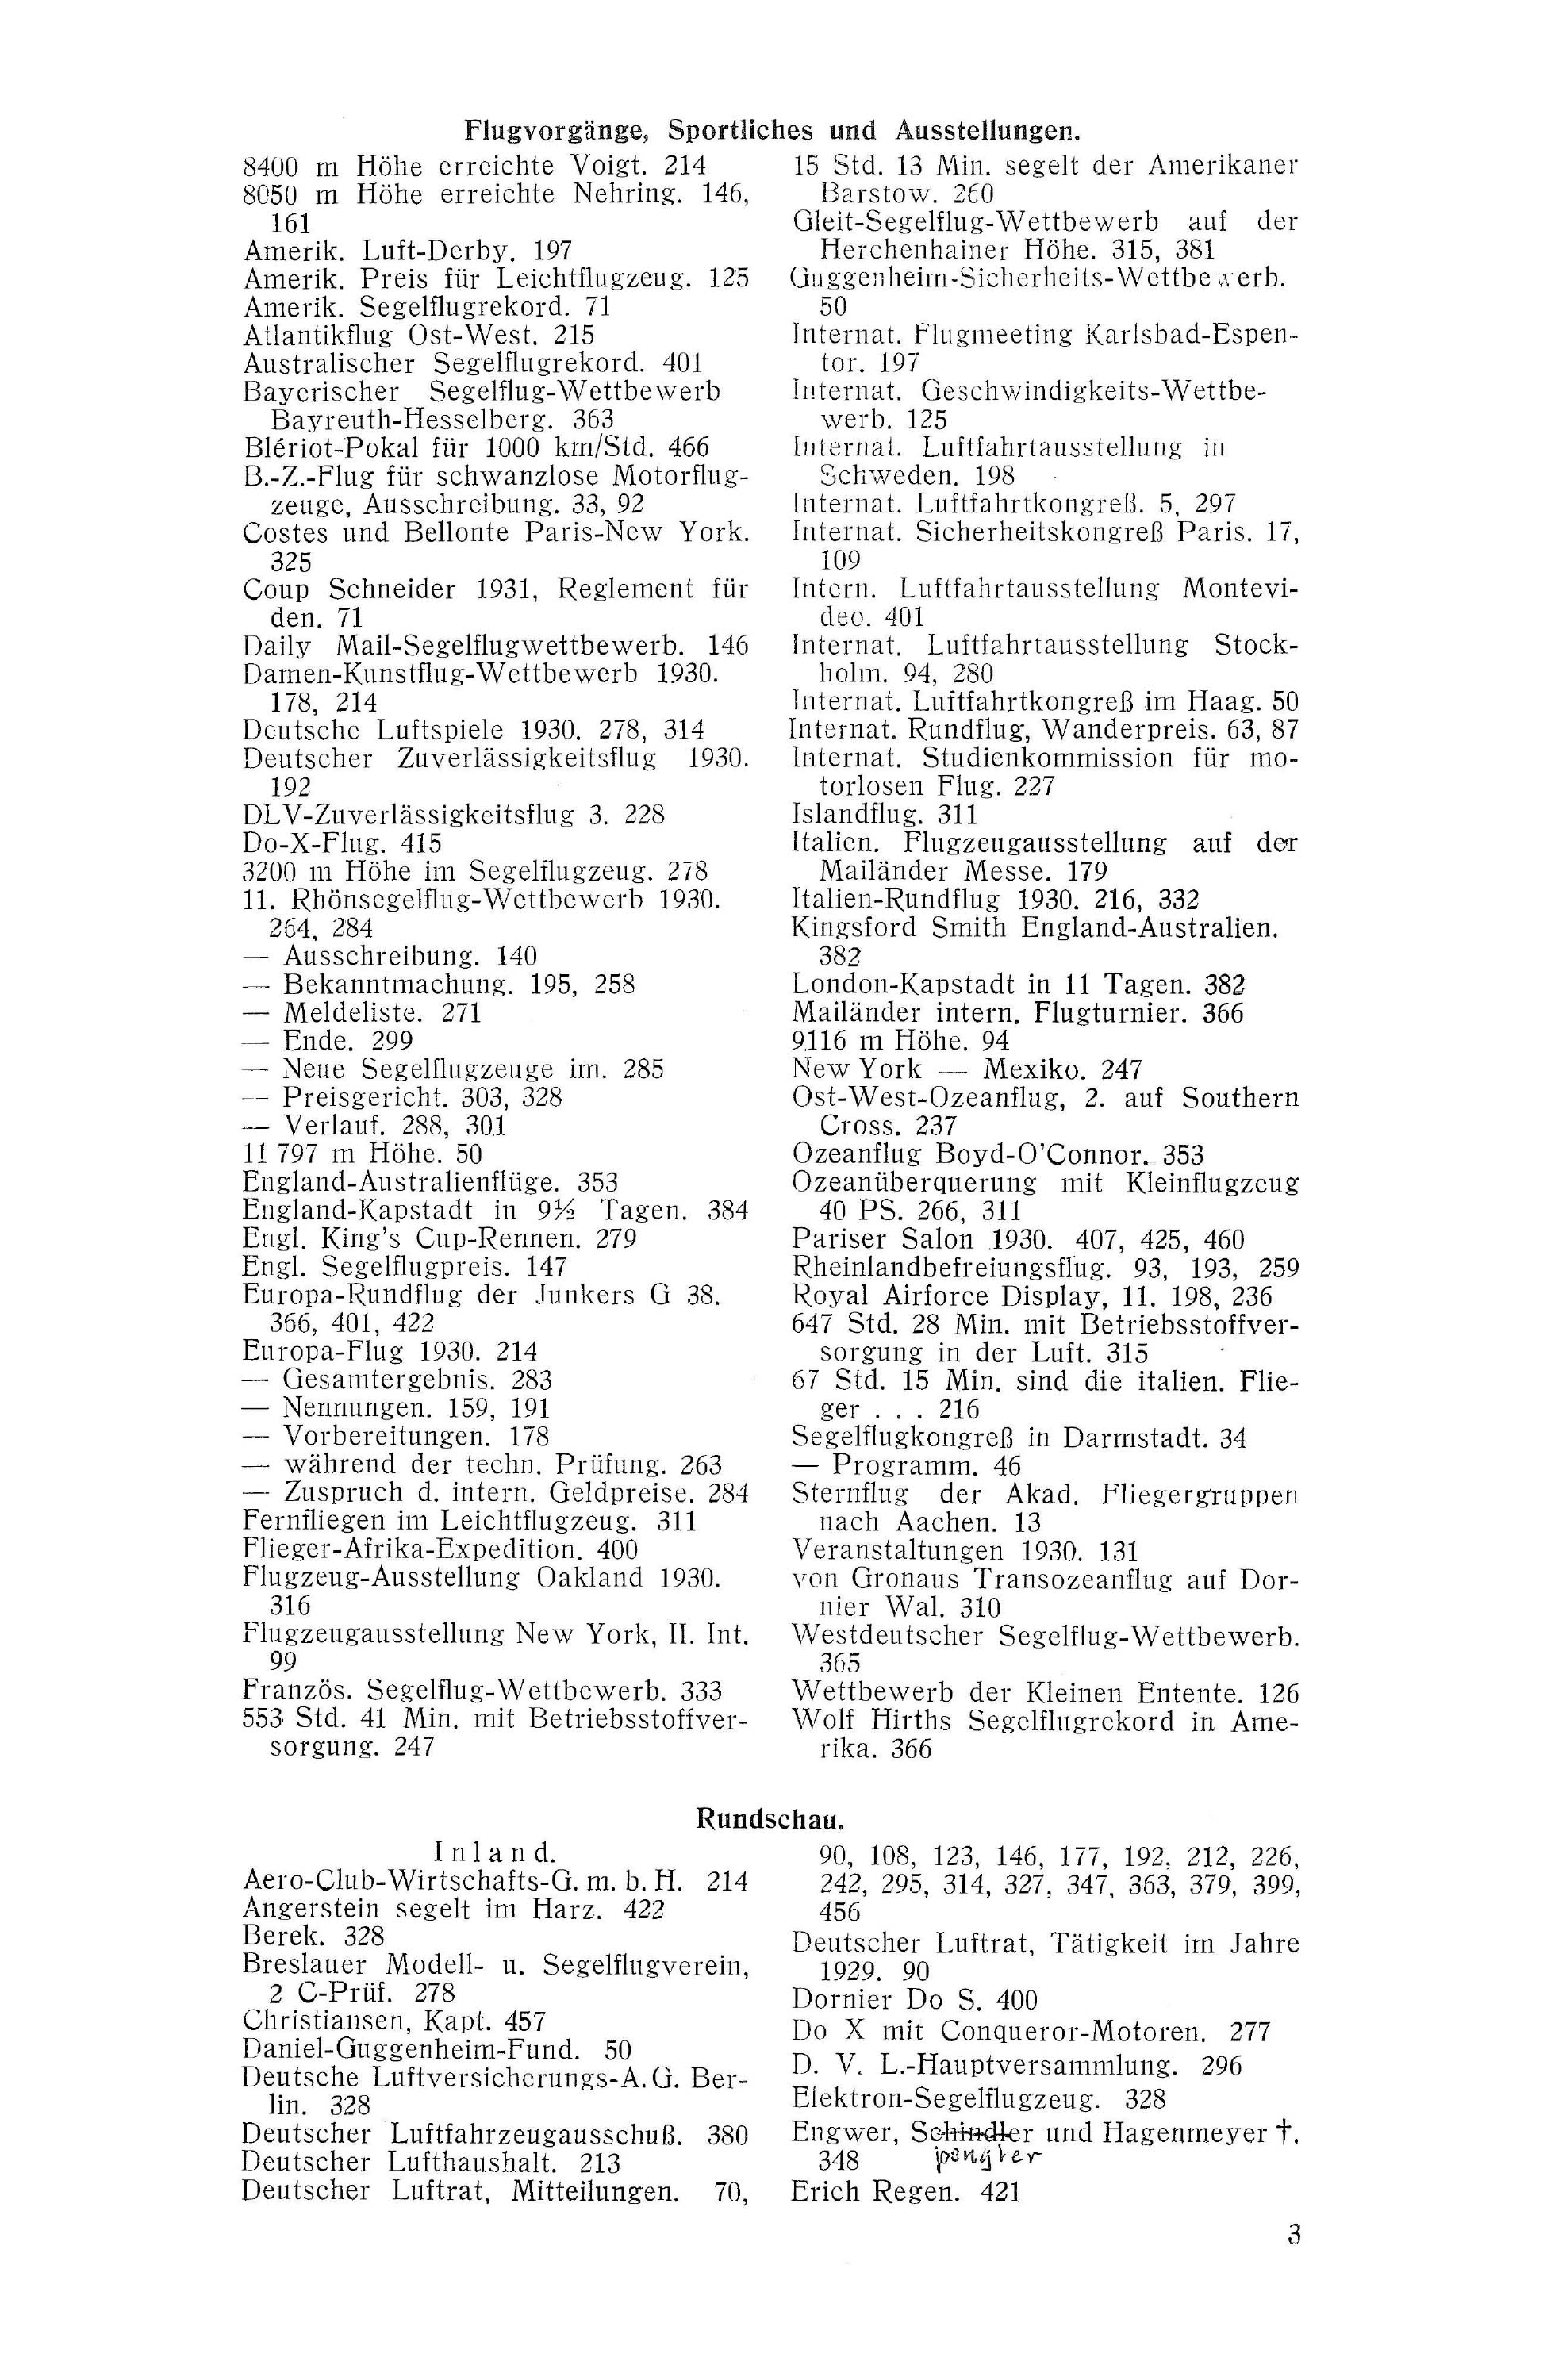 Sachregister und Inhaltsverzeichnis der Zeitschrift Flugsport 1930